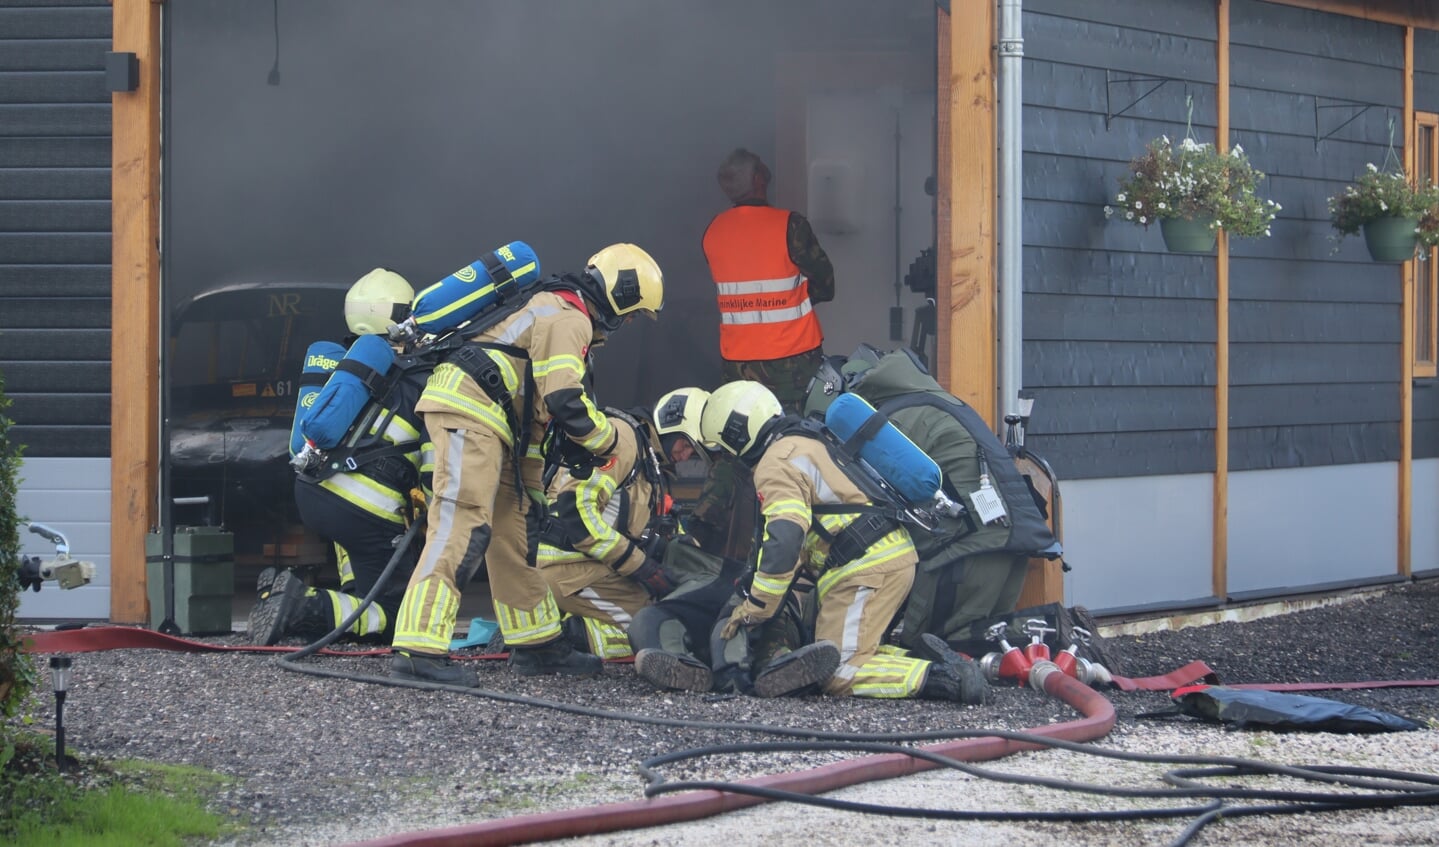 • Brandweermannen bekommeren zich om het 'slachtoffer'. 